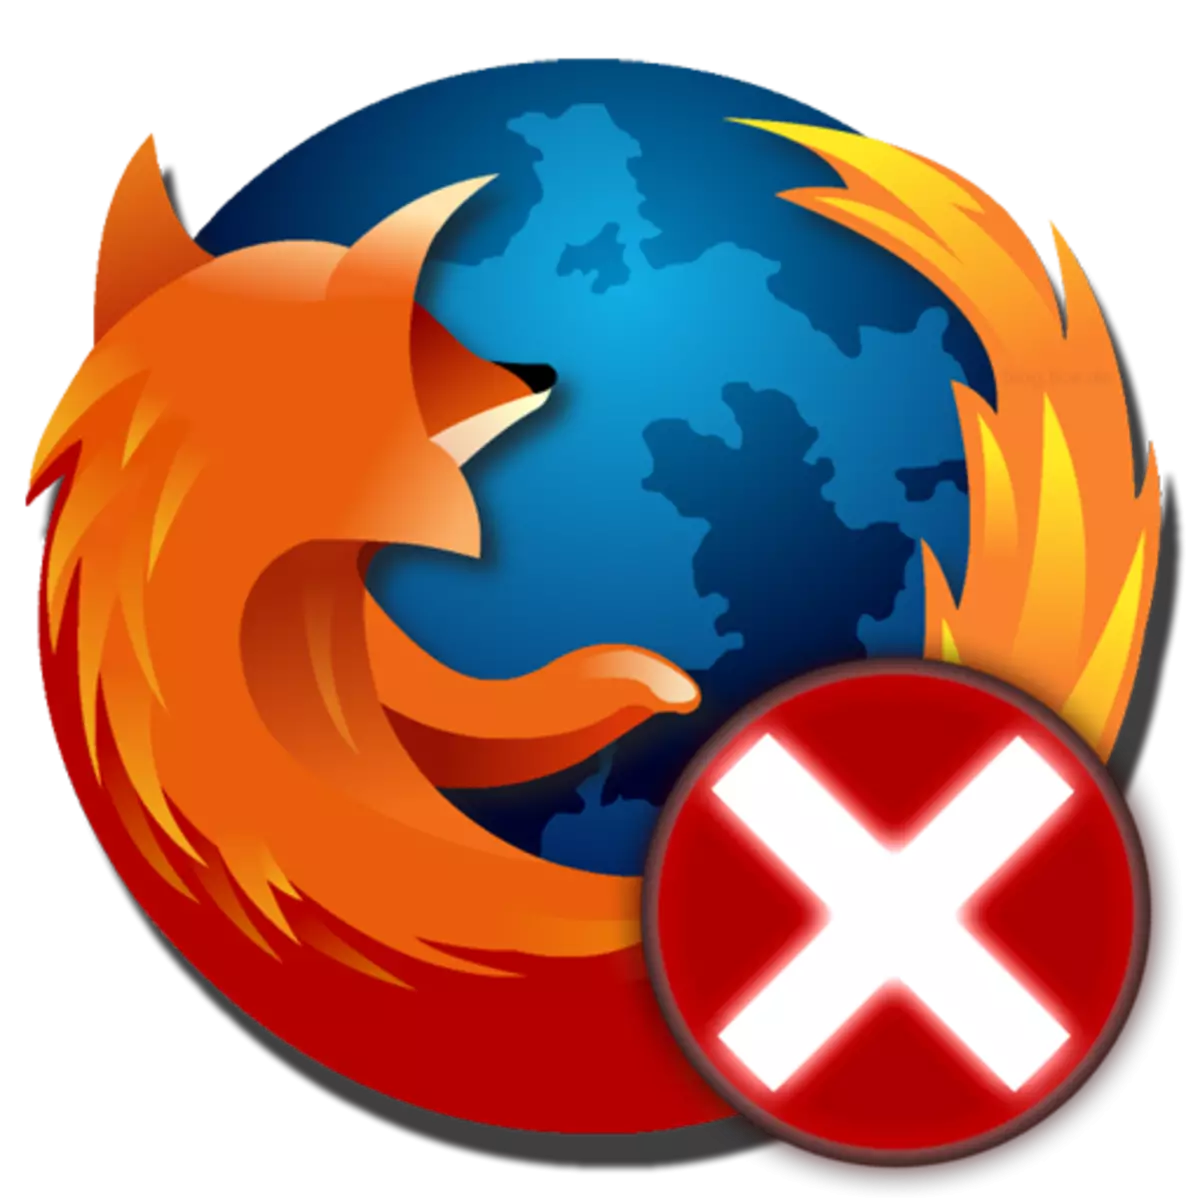 Firefox: Hitilafu ya SEC isiyojulikana. Jinsi ya kurekebisha